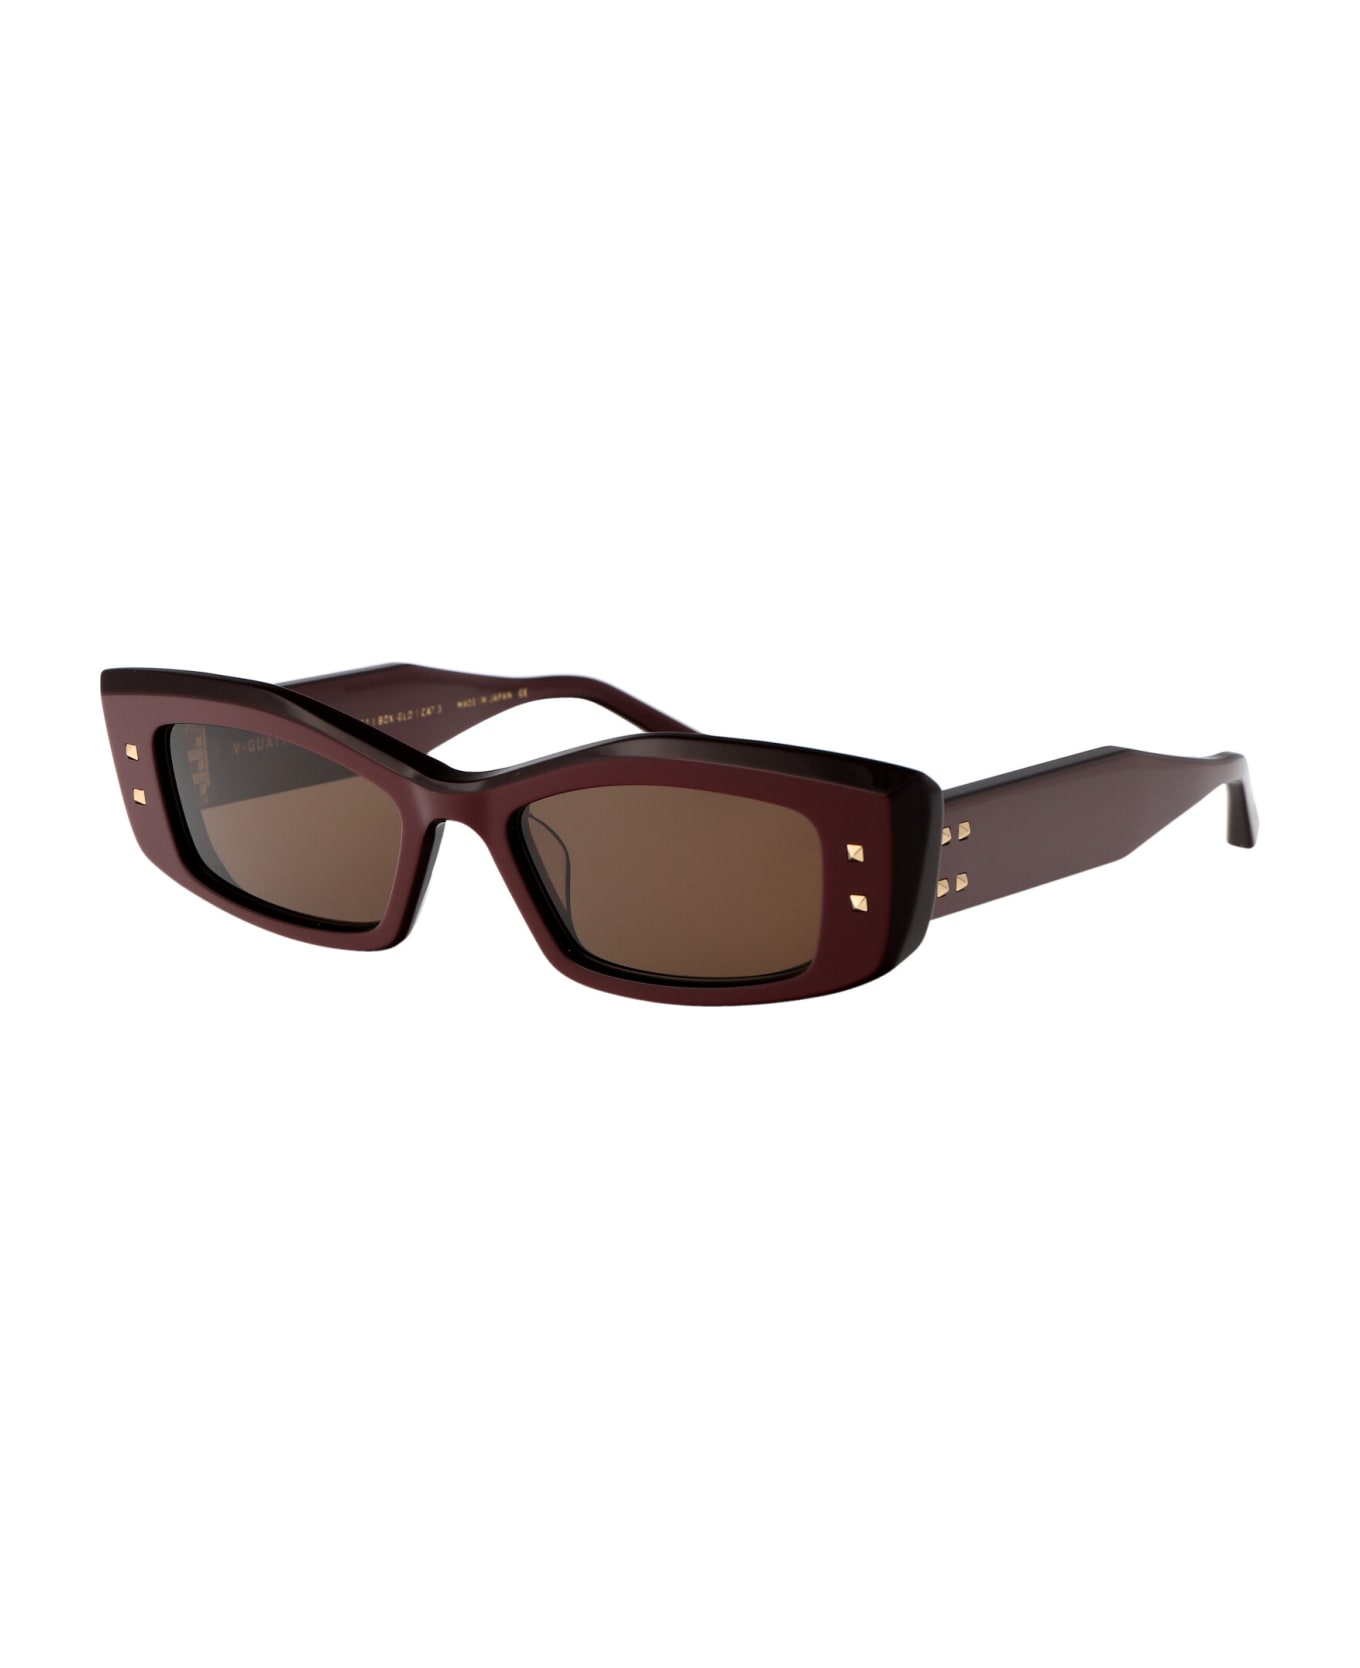 Valentino Eyewear V - Quattro Sunglasses - 109B BDX - GLD サングラス